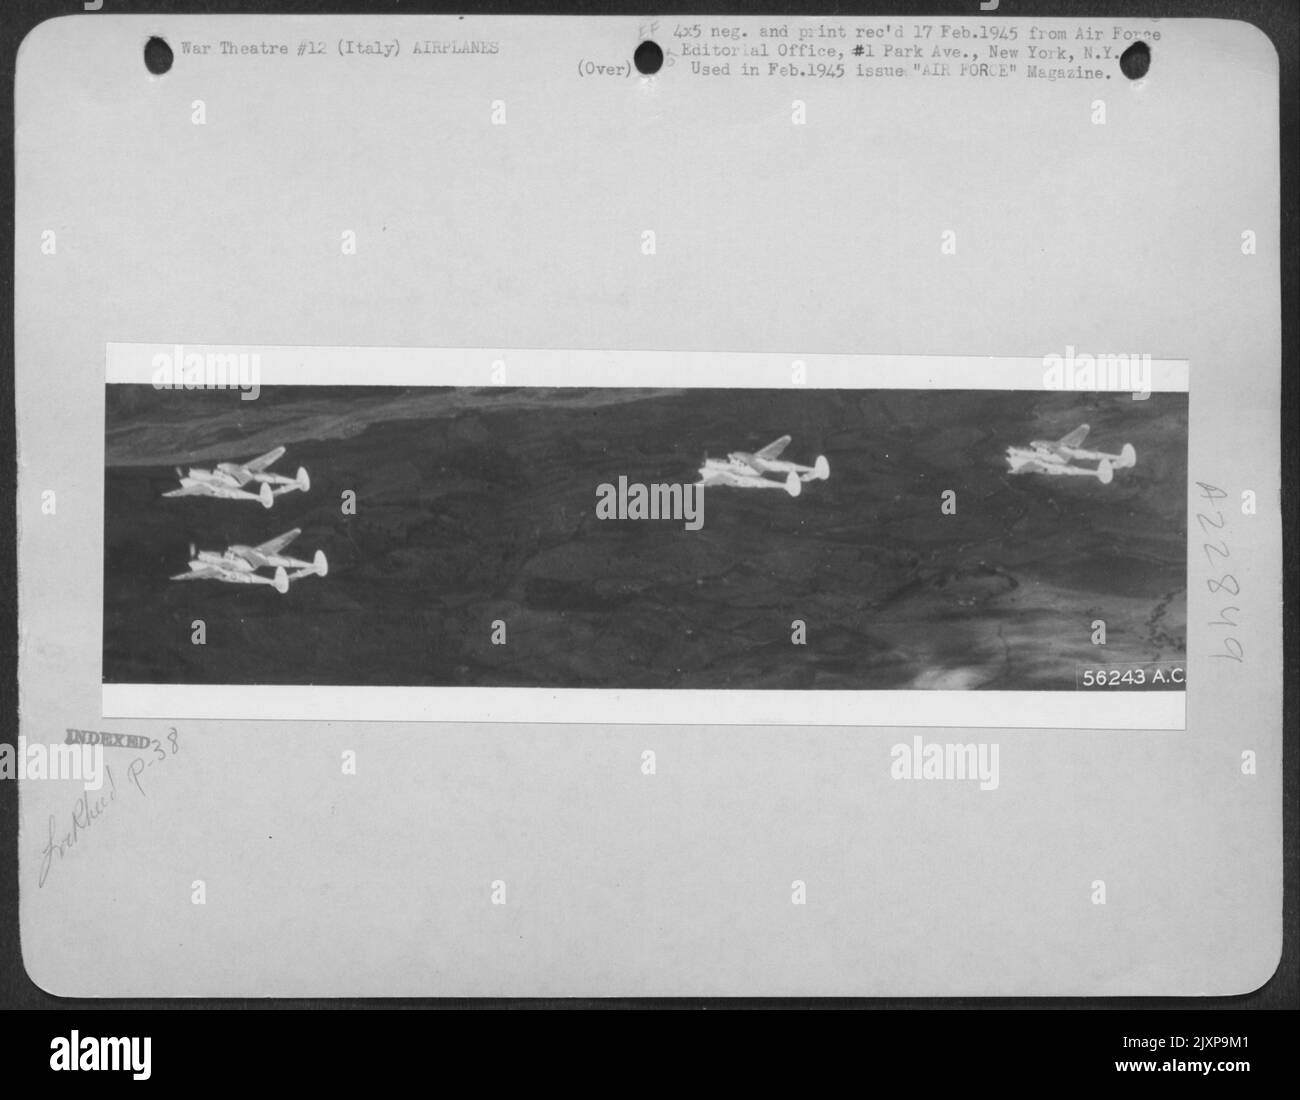 Mit einem Flügelmann, der jeden Elementführer bedeckt, fliegen diese Lockheed P-38 Blitze in Kampfformation zu einem Ziel in Norditalien. Stockfoto